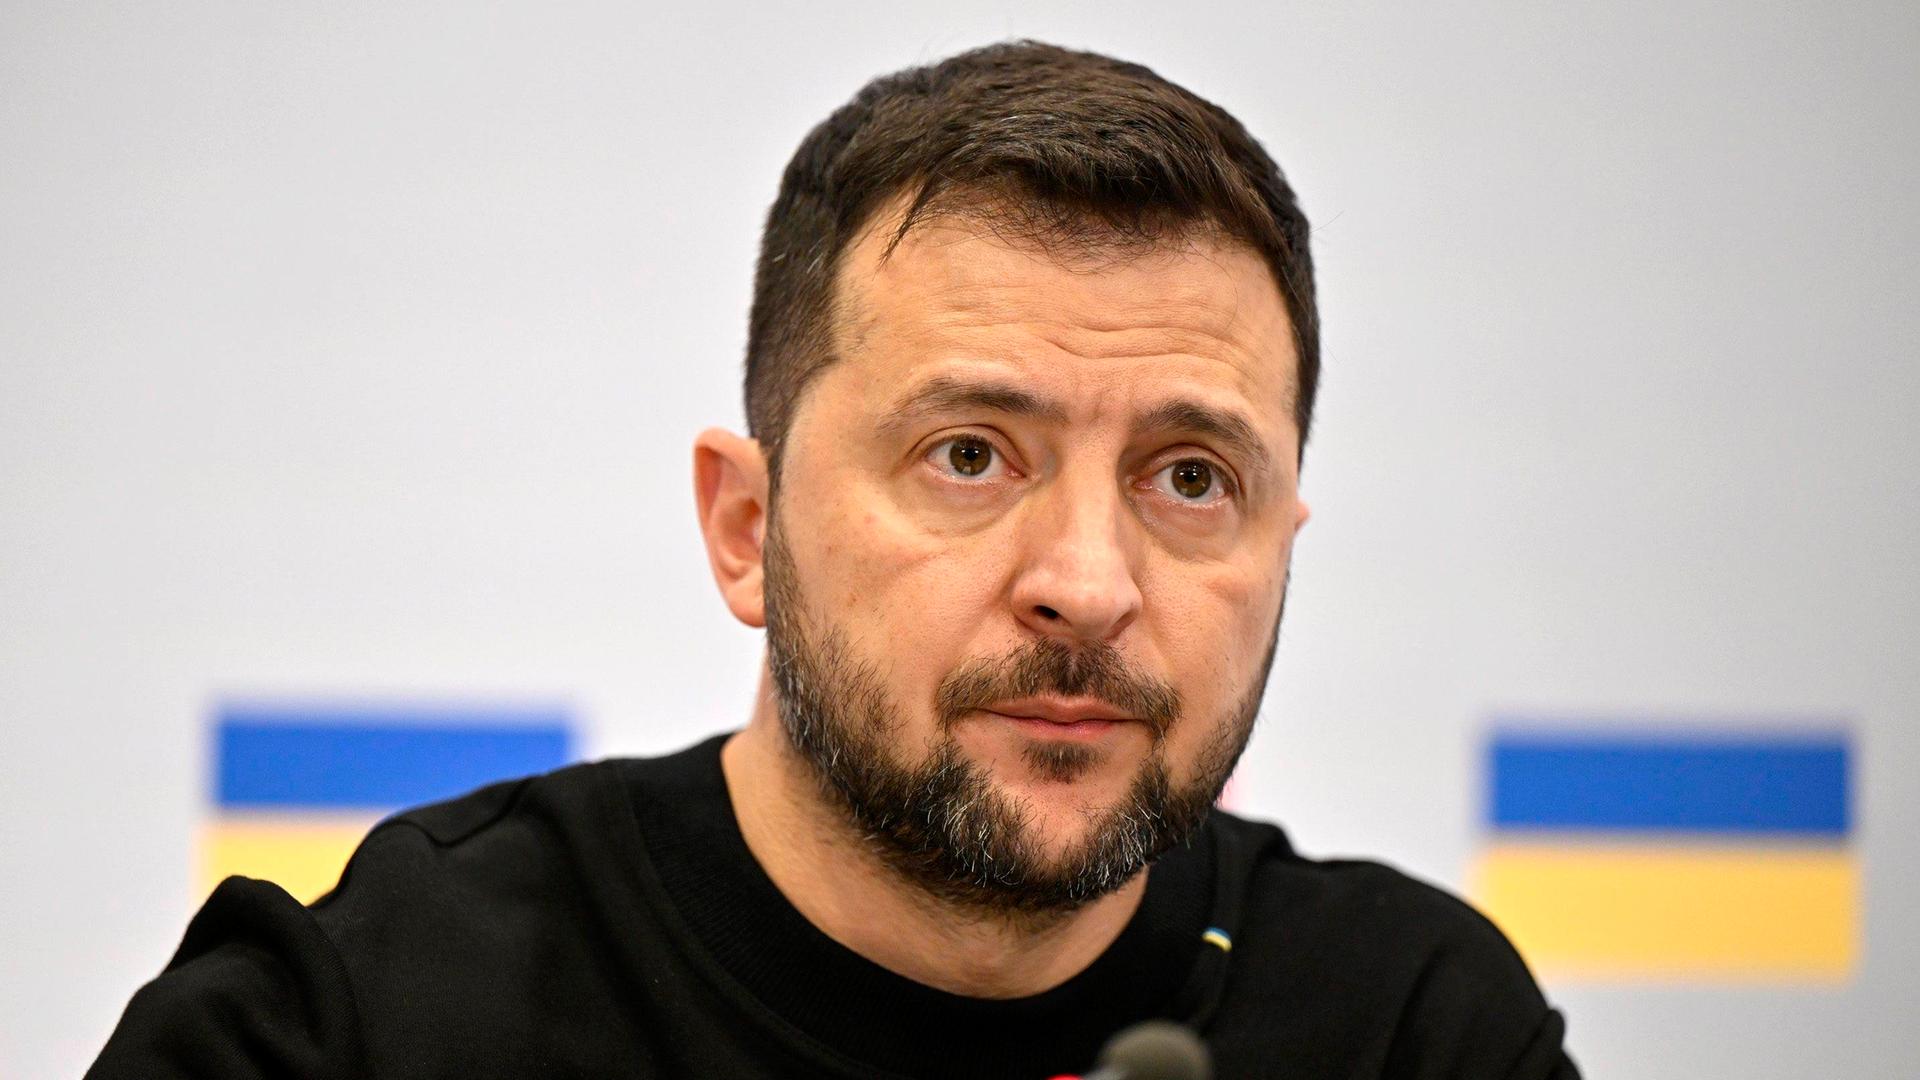 Das Bild zeigt Selenskyj im schwarzen Shirt vor einer weißen Wand mit zwei aufgedruckten ukrainische Flaggen. Er schaut ernst, vor ihm ein Mikrofon.